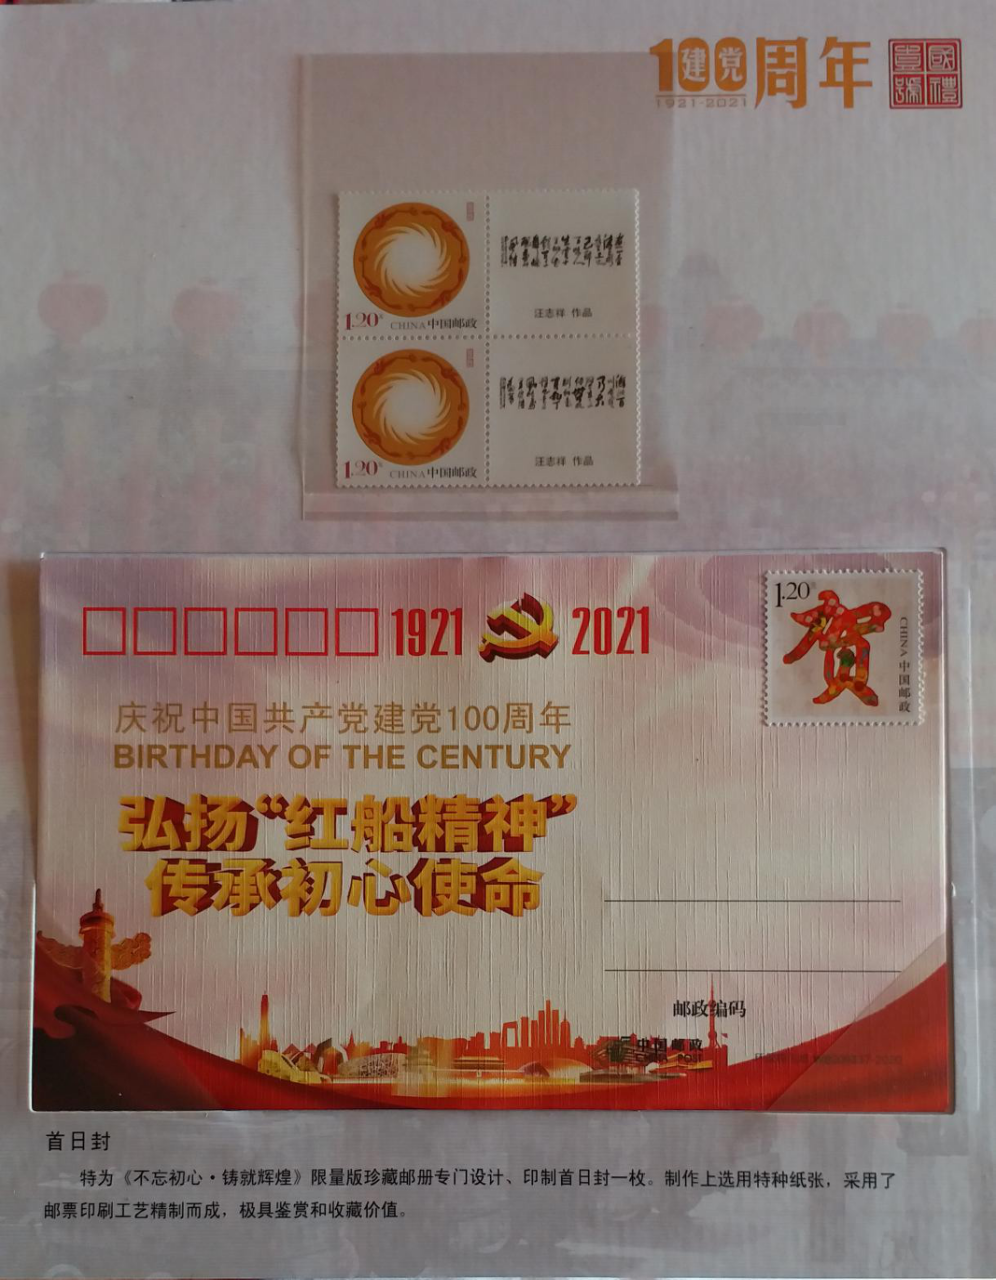 汪志祥书法被中国邮政吸收进入邮票珍藏纪念册